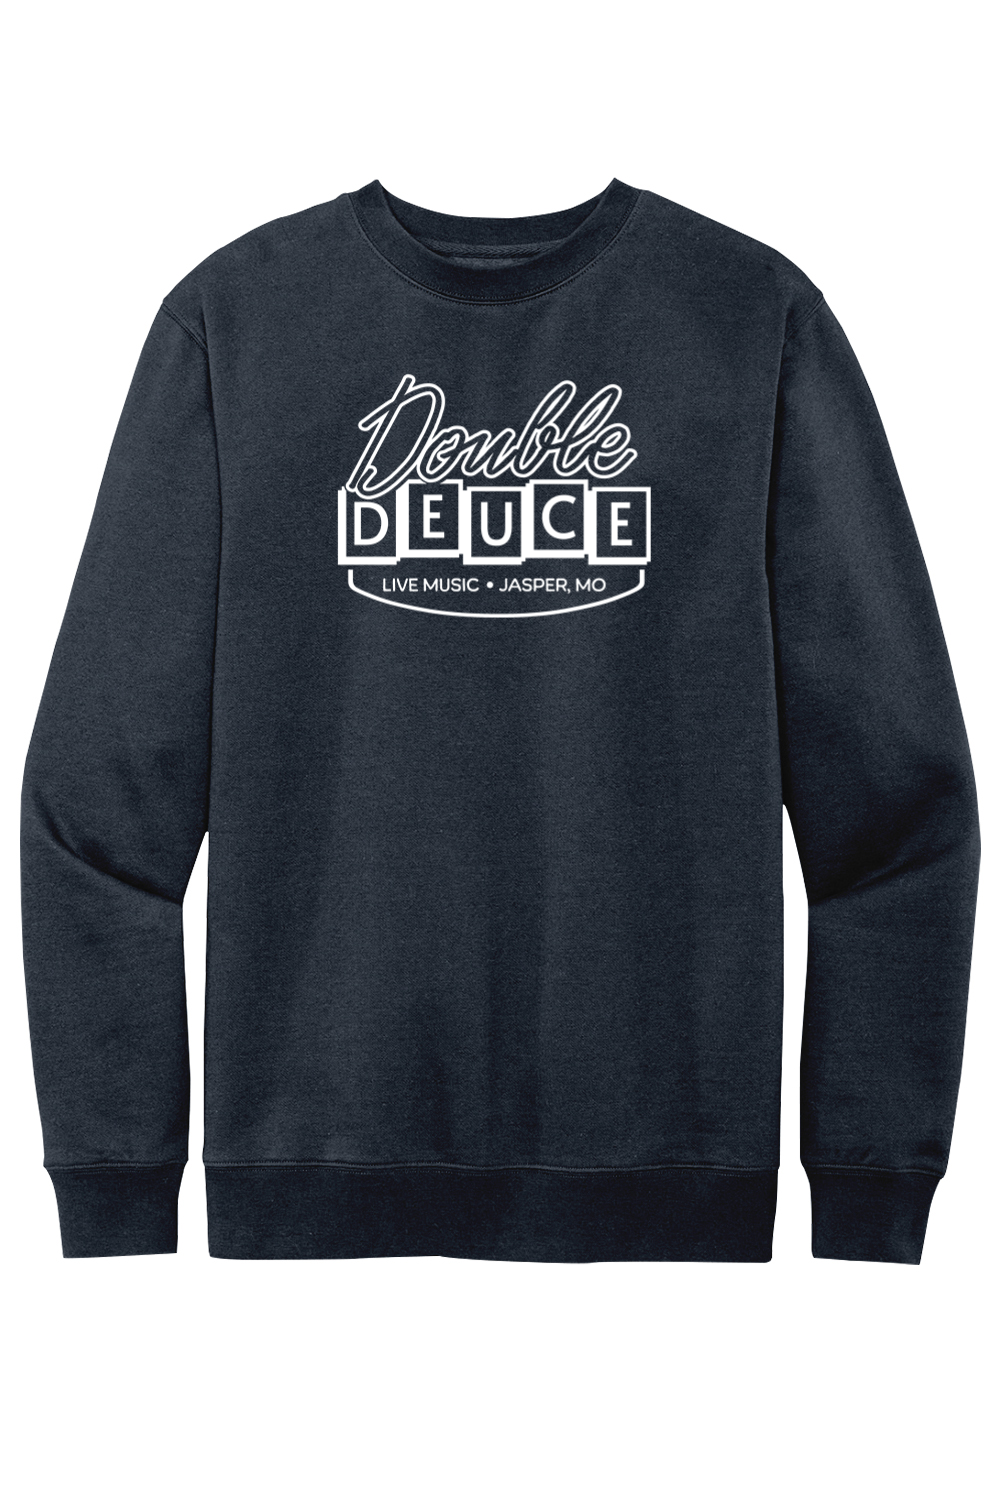 Double Deuce - Live Music Bar (Road House) - Fleece Crewneck Sweatshirt - Yinzylvania